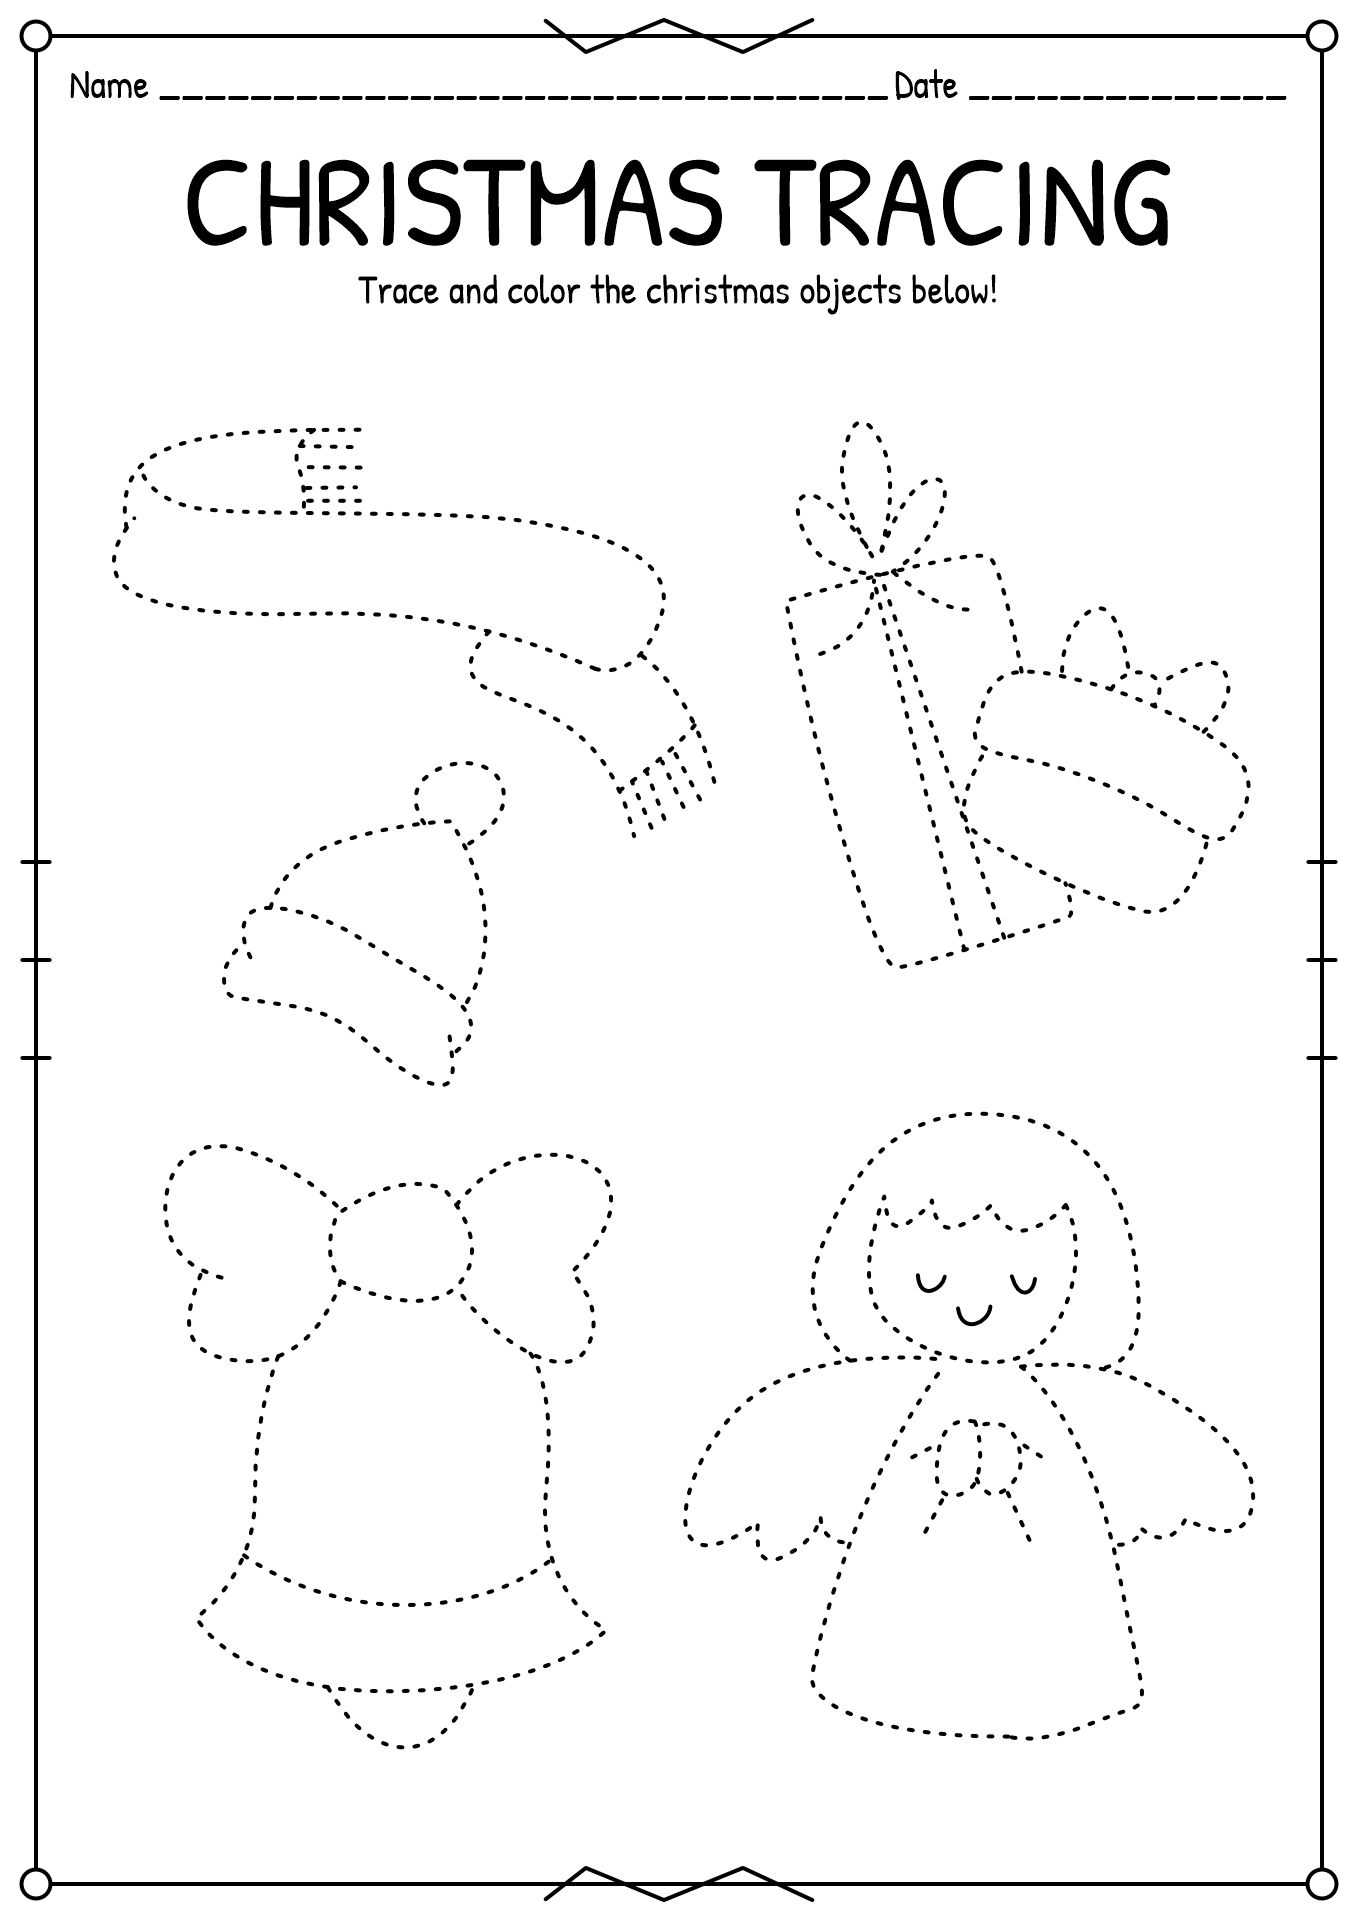 Free Printable Christmas Worksheets Preschool Image